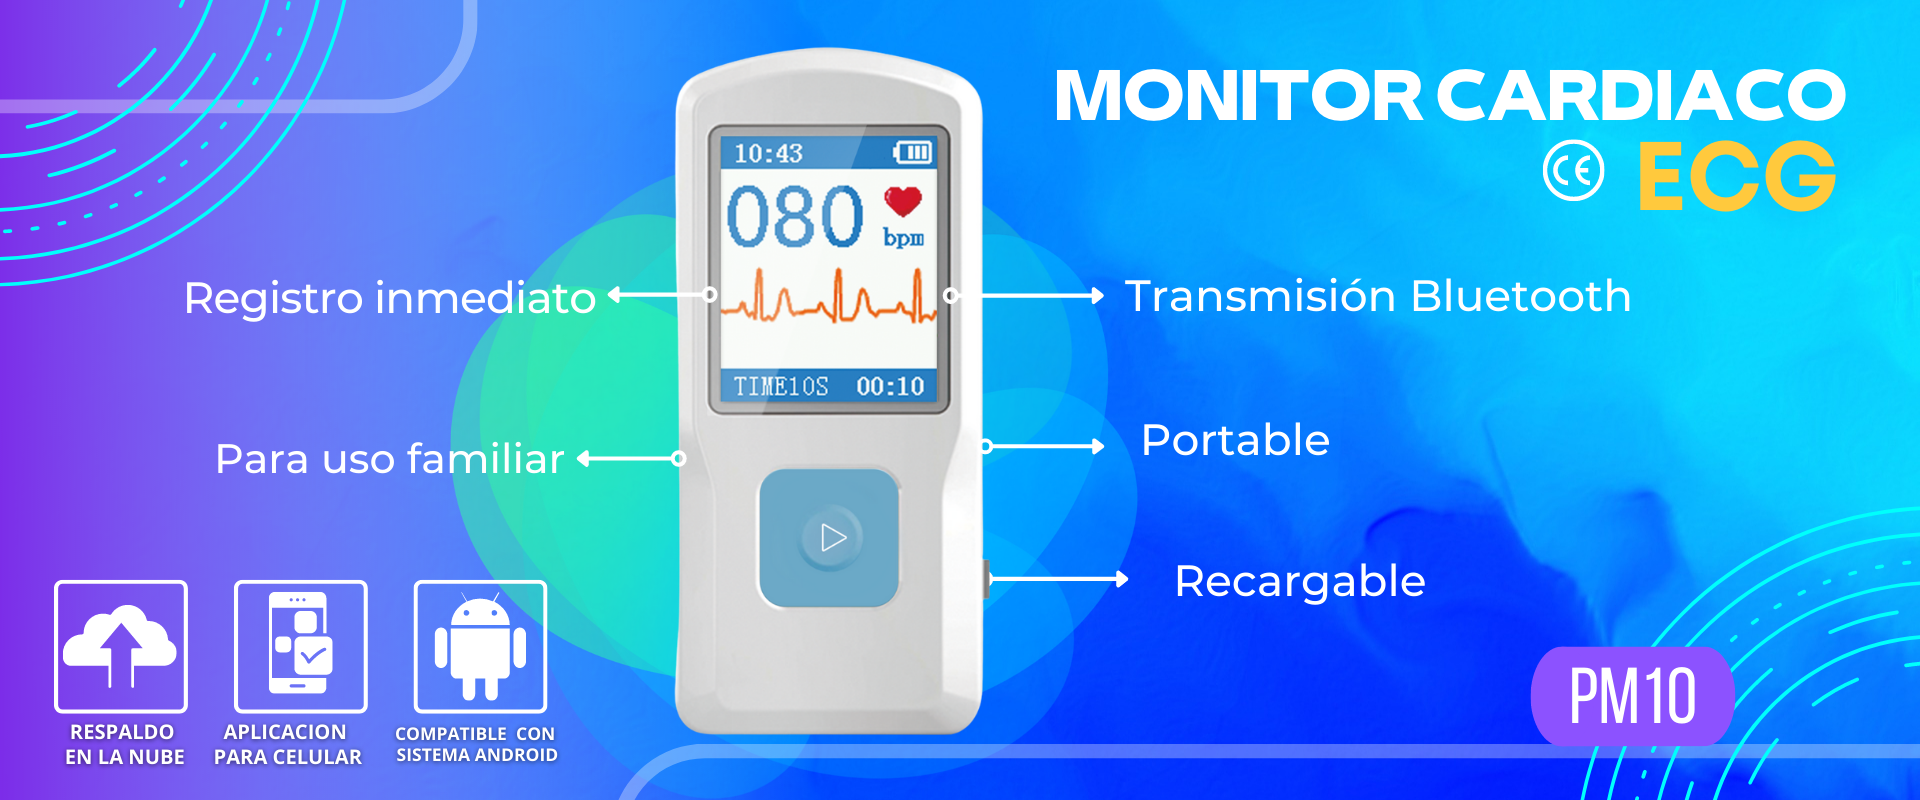 Monitor  portátil cardíaco